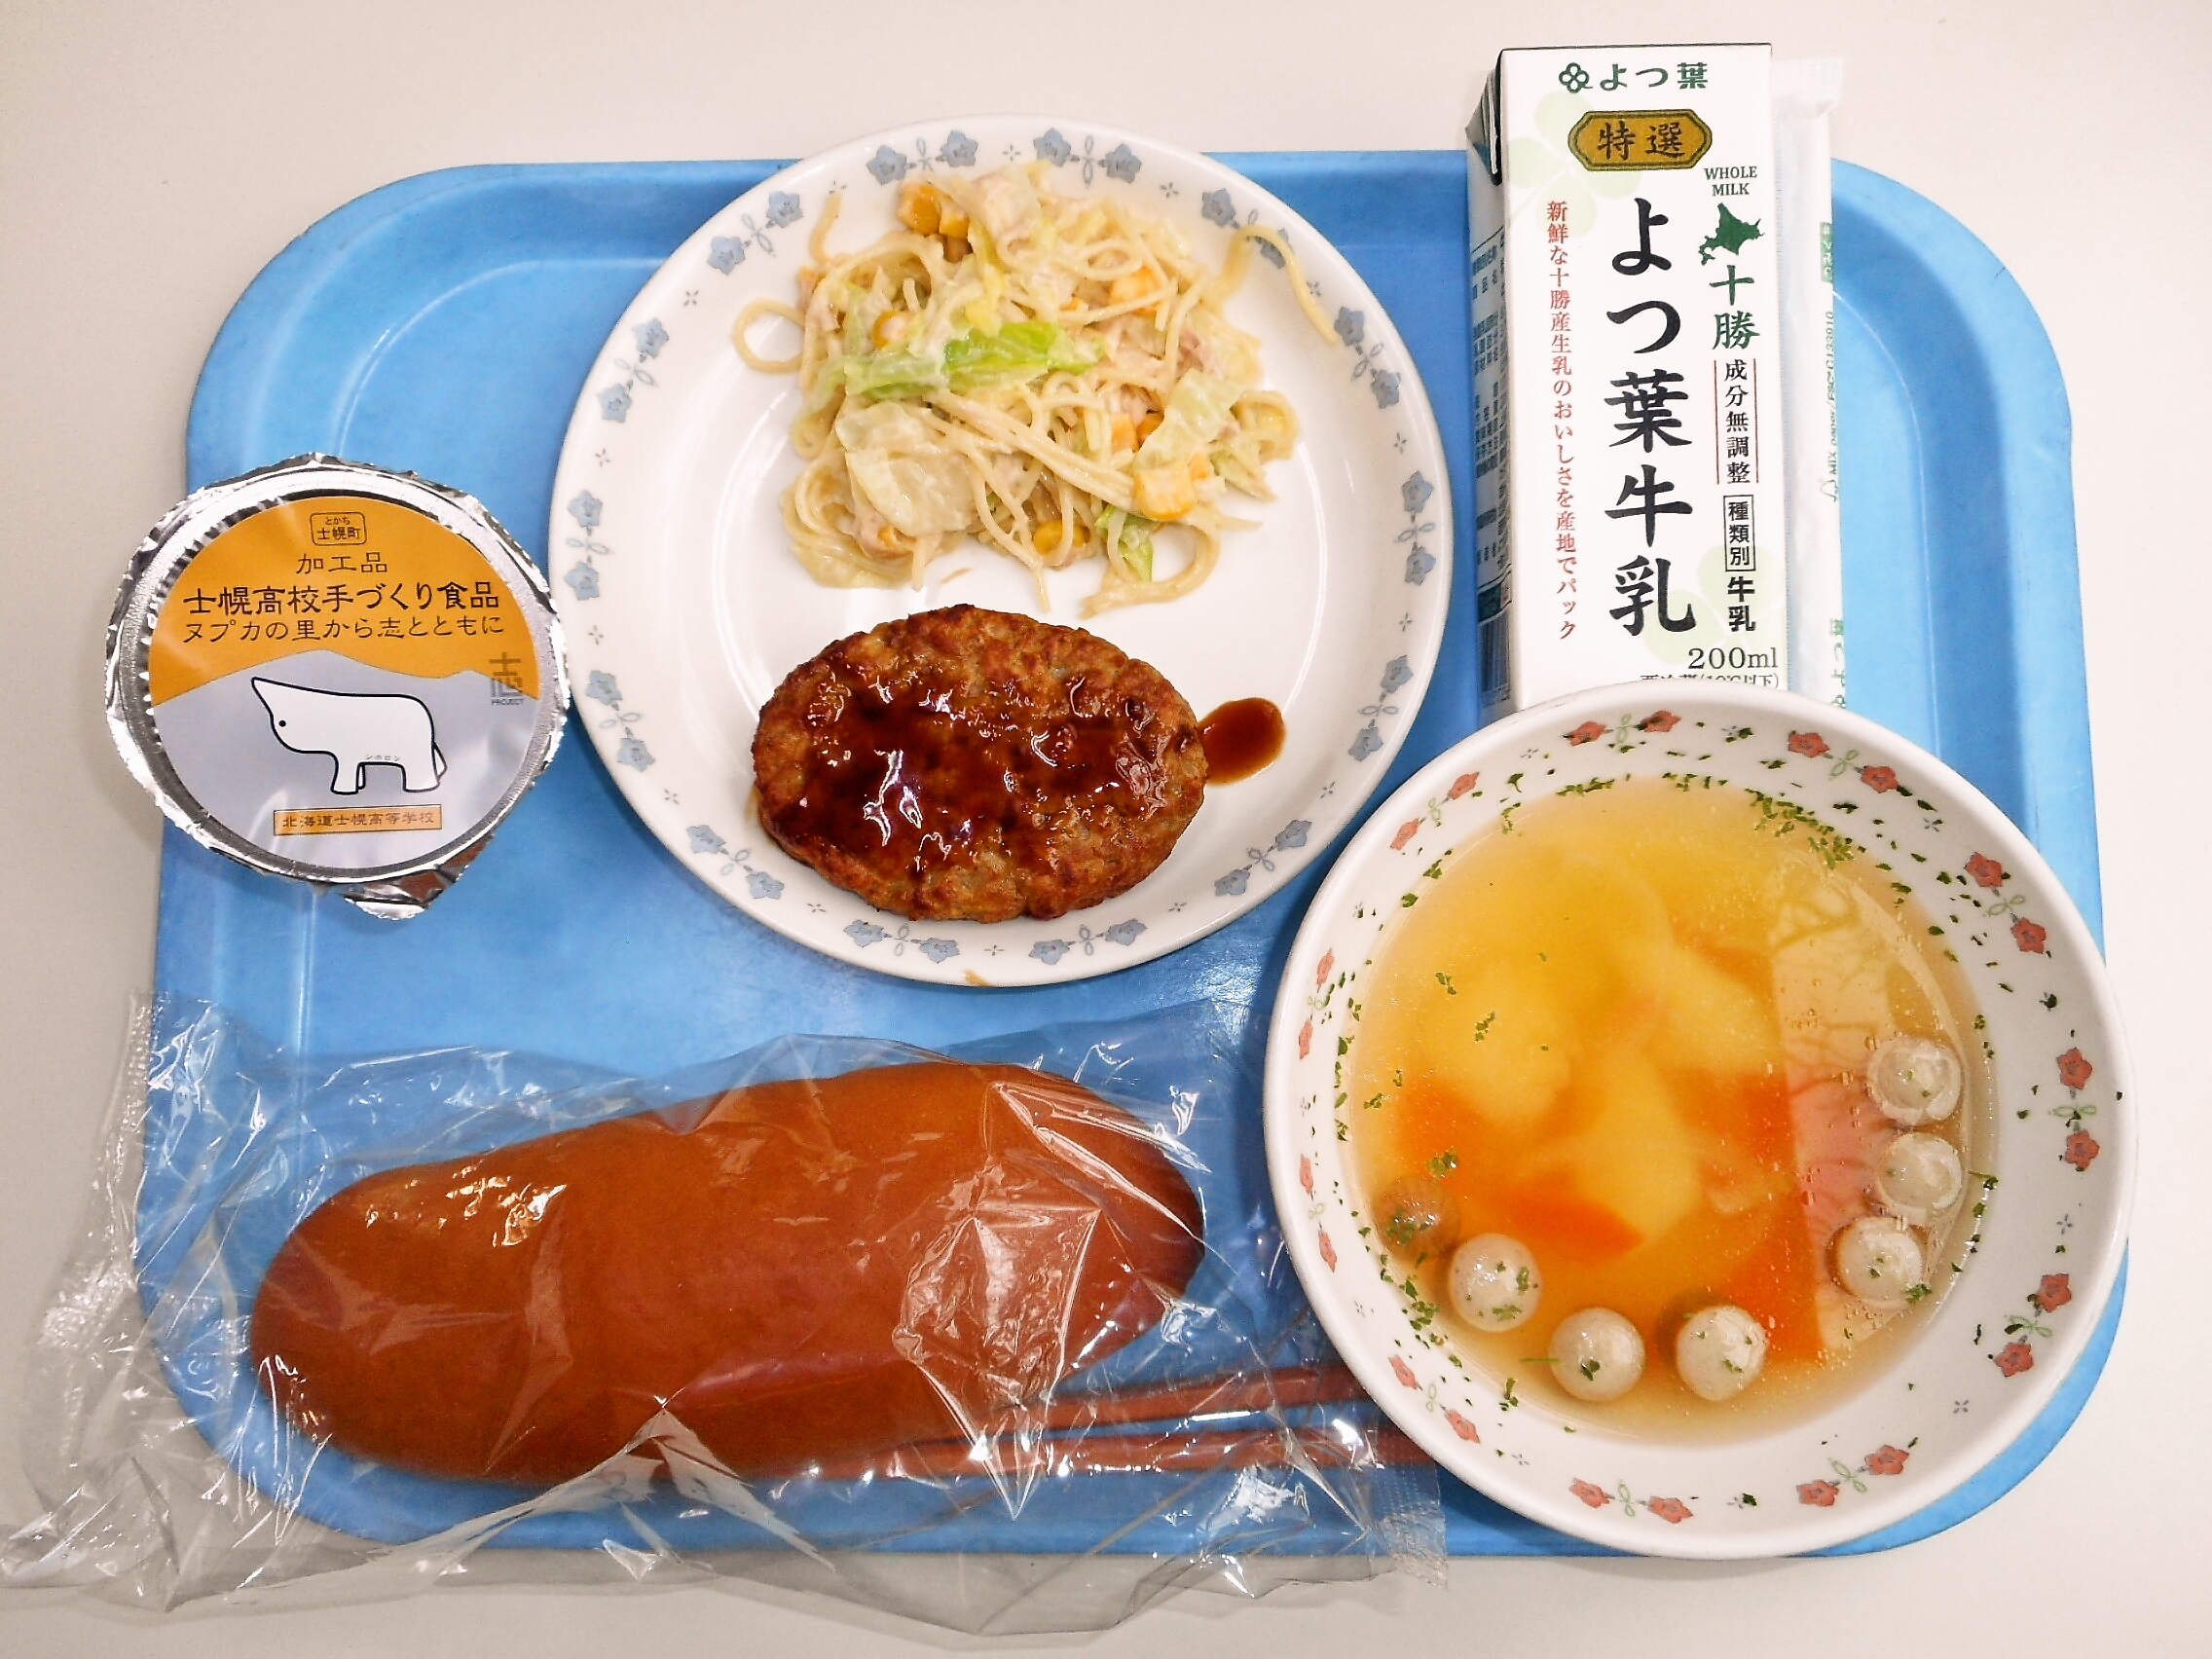 かぼちゃパン、ポトフ、ハンバーグ、ツナスパサラダ、士幌カップヨーグルト（士幌高校）、牛乳